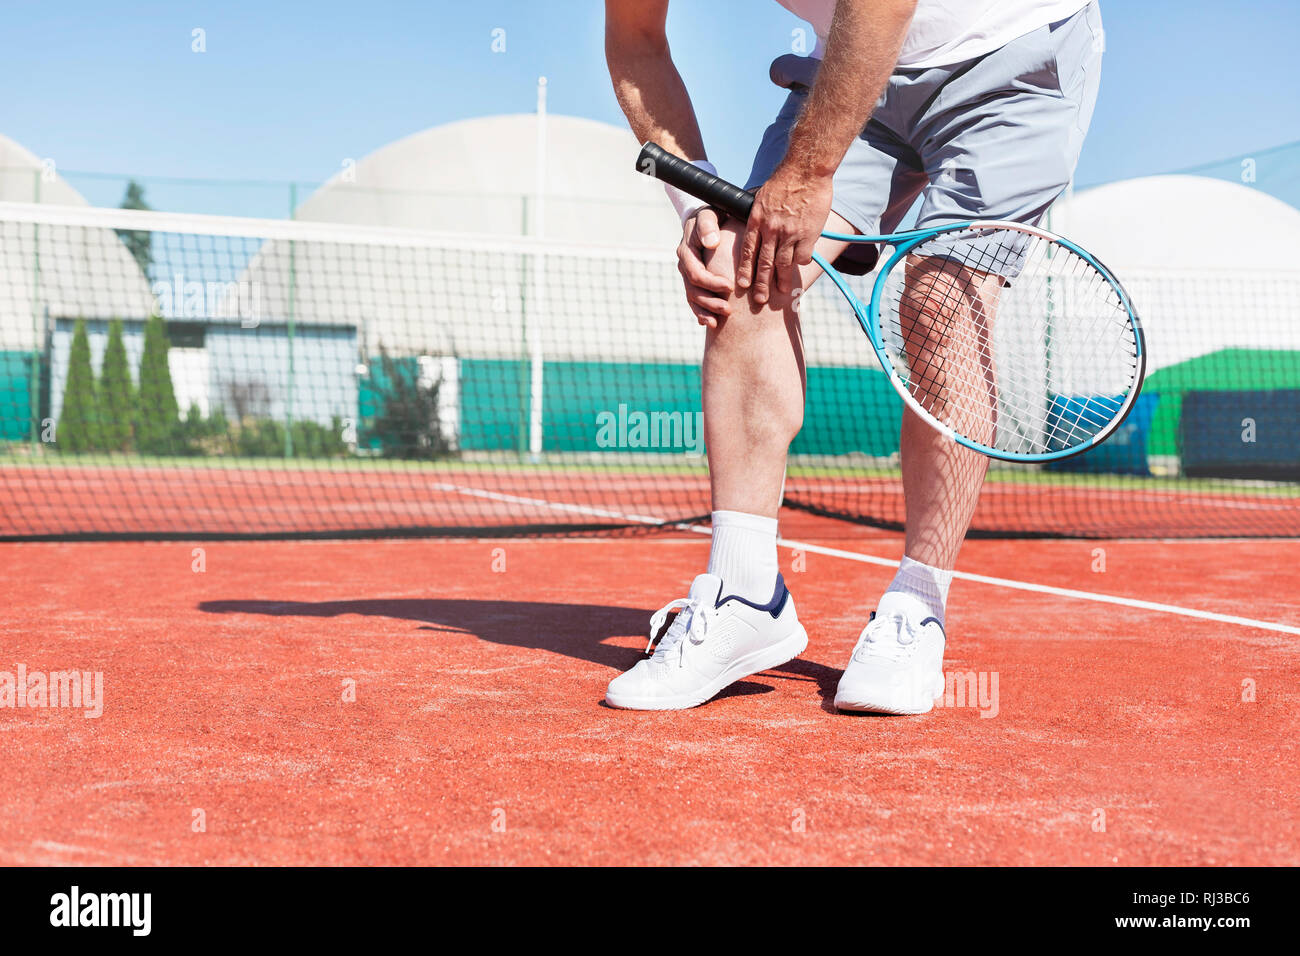 La section basse de mature man holding tennis raquette tout en souffrant de douleur au genou sur rouge tennis durant l'été Banque D'Images